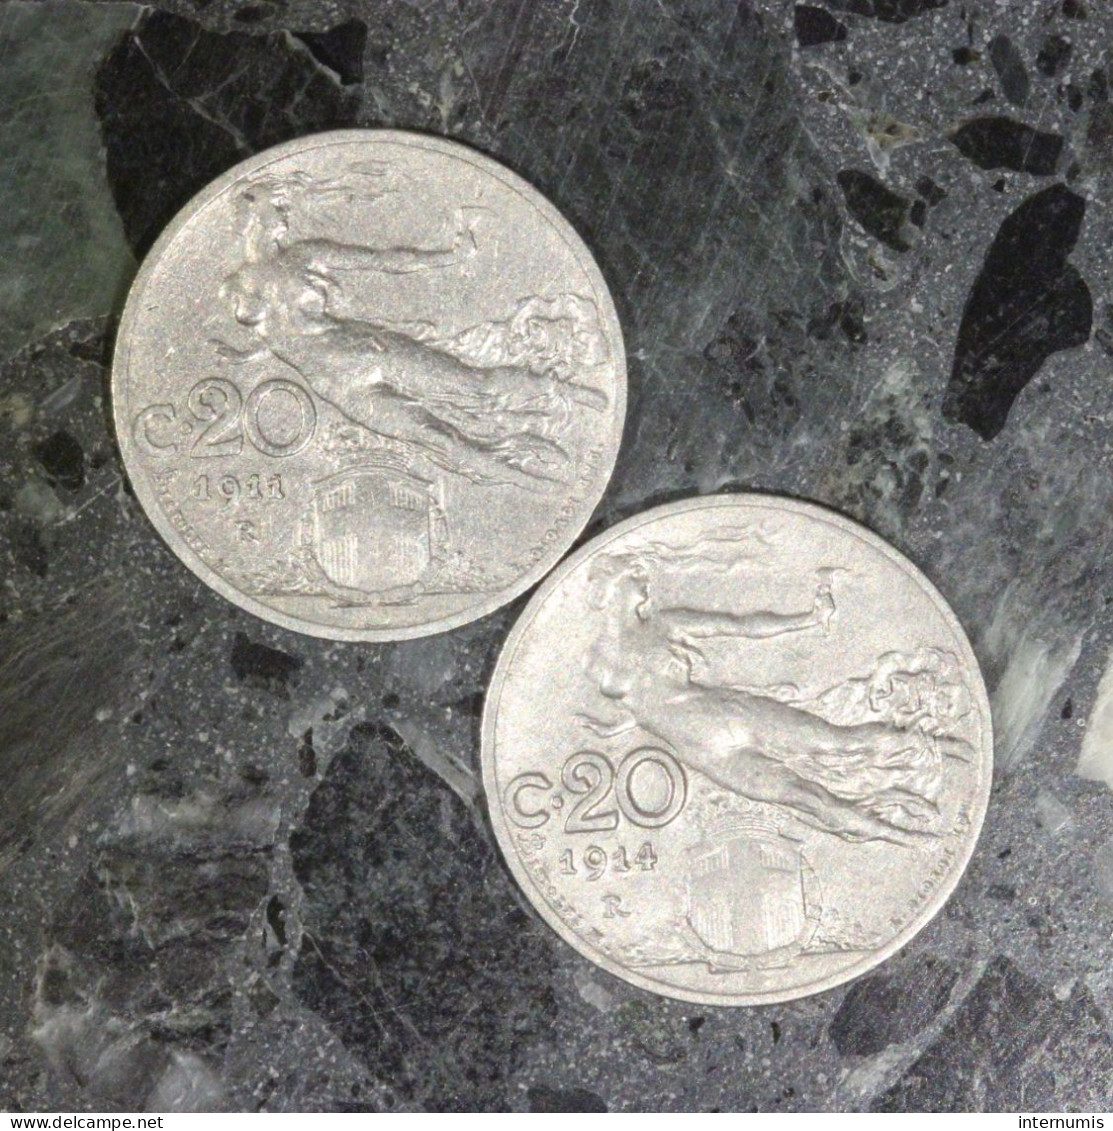 LOT (2) : 2 Centesimi 1911-R & 1914-R Italie / Italy, , 20 Centesimi , 1911 & 1914, , Nickel, ,
KM# - Mezclas - Monedas